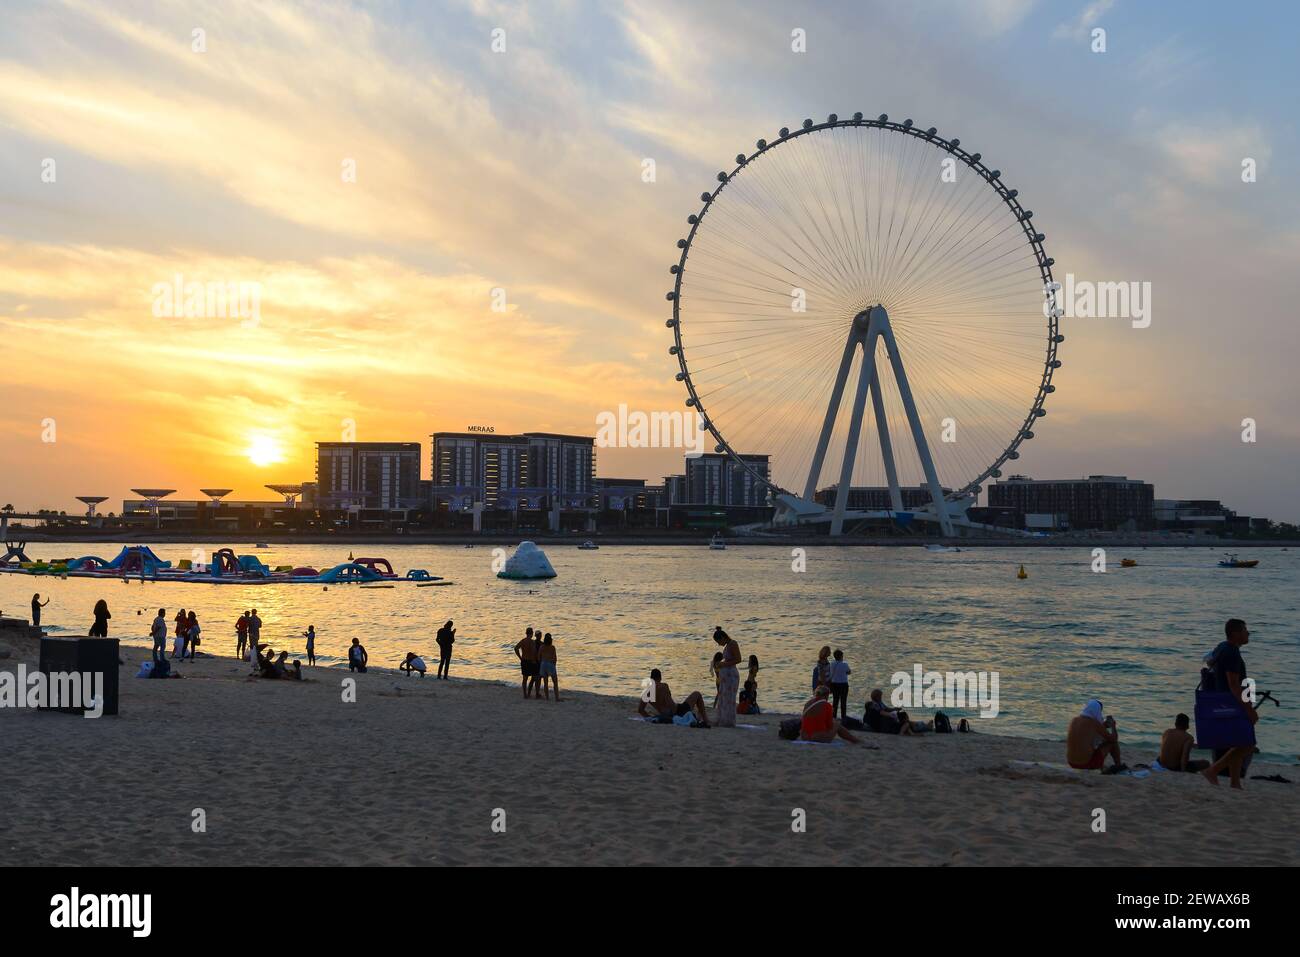 Touristes à JBR Marina Beach pendant le coucher du soleil et Ain Dubai Eye Ferris silhouette de roue. Les Émirats arabes Unis sont ouverts au tourisme avec des restrictions COVID. Banque D'Images